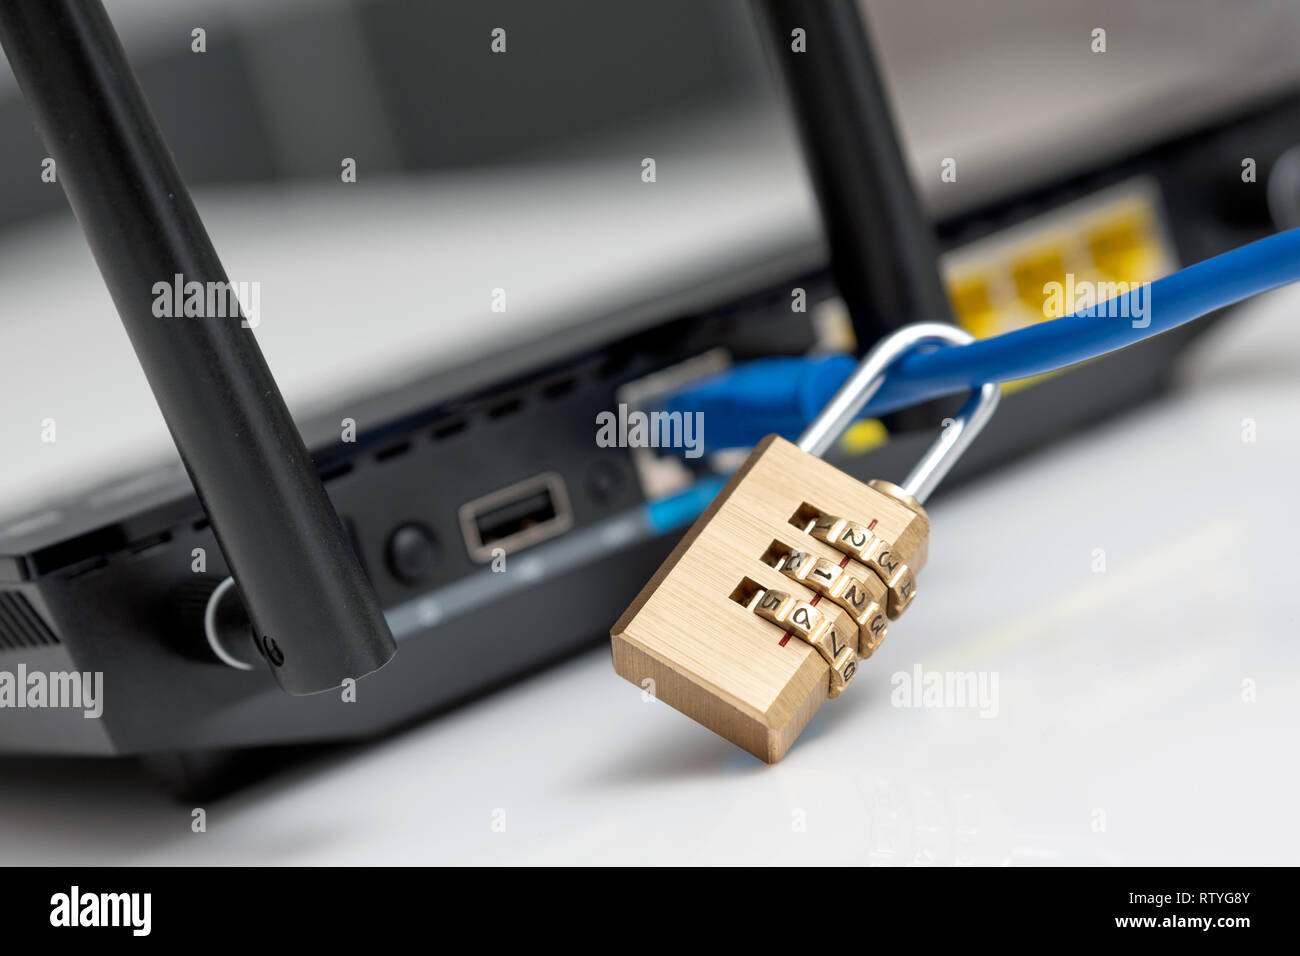 Cable network box immagini e fotografie stock ad alta risoluzione - Alamy